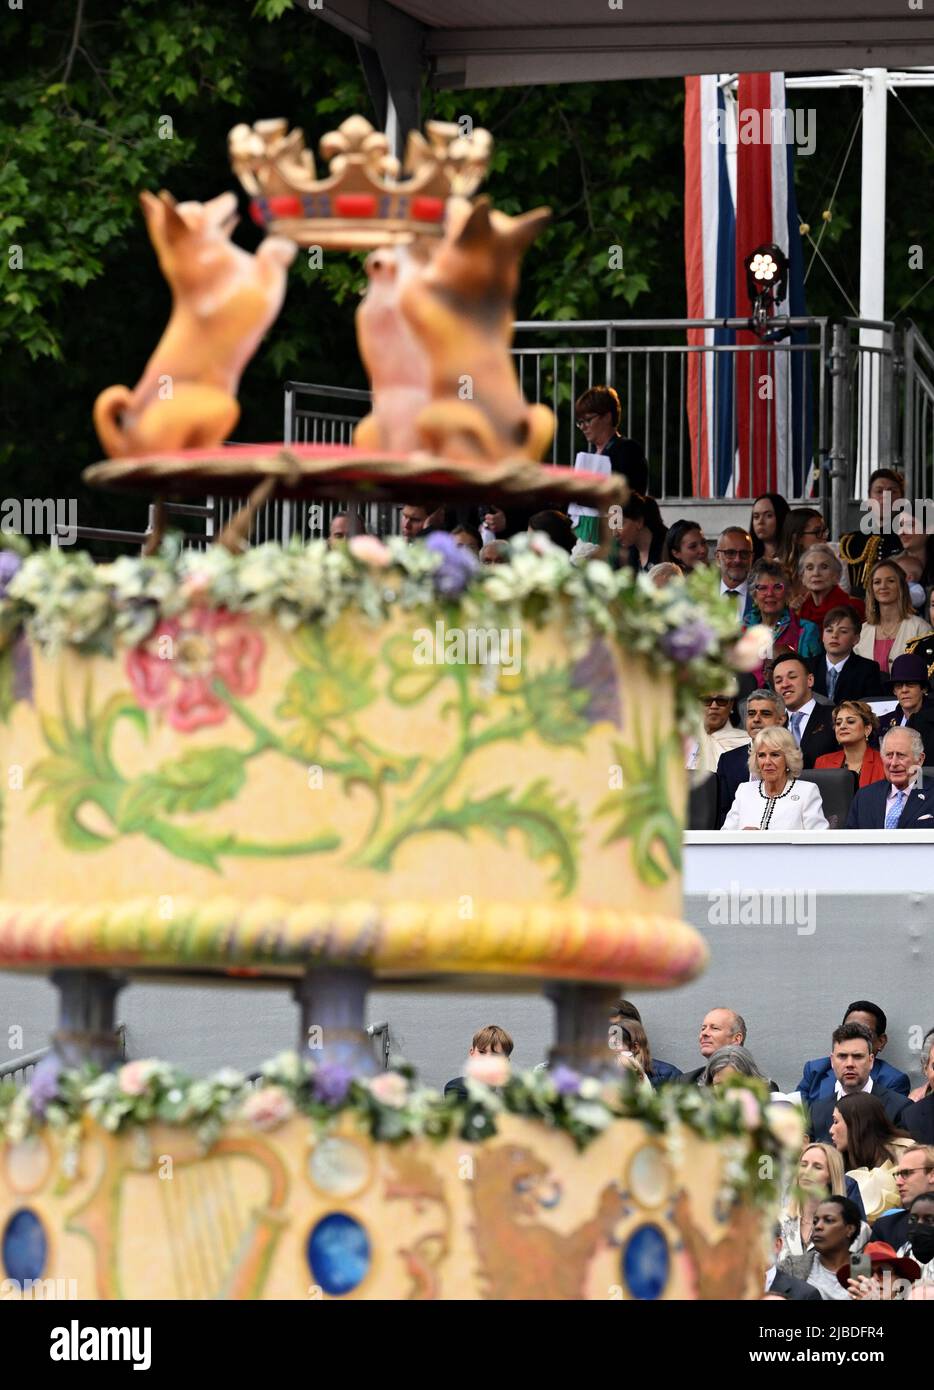 Teilnehmer des Platinum Jubilee Pageant vor dem Buckingham Palace, London, am vierten Tag der Platinum Jubilee Feiern für Queen Elizabeth II. Bilddatum: Sonntag, 5. Juni 2022. Stockfoto